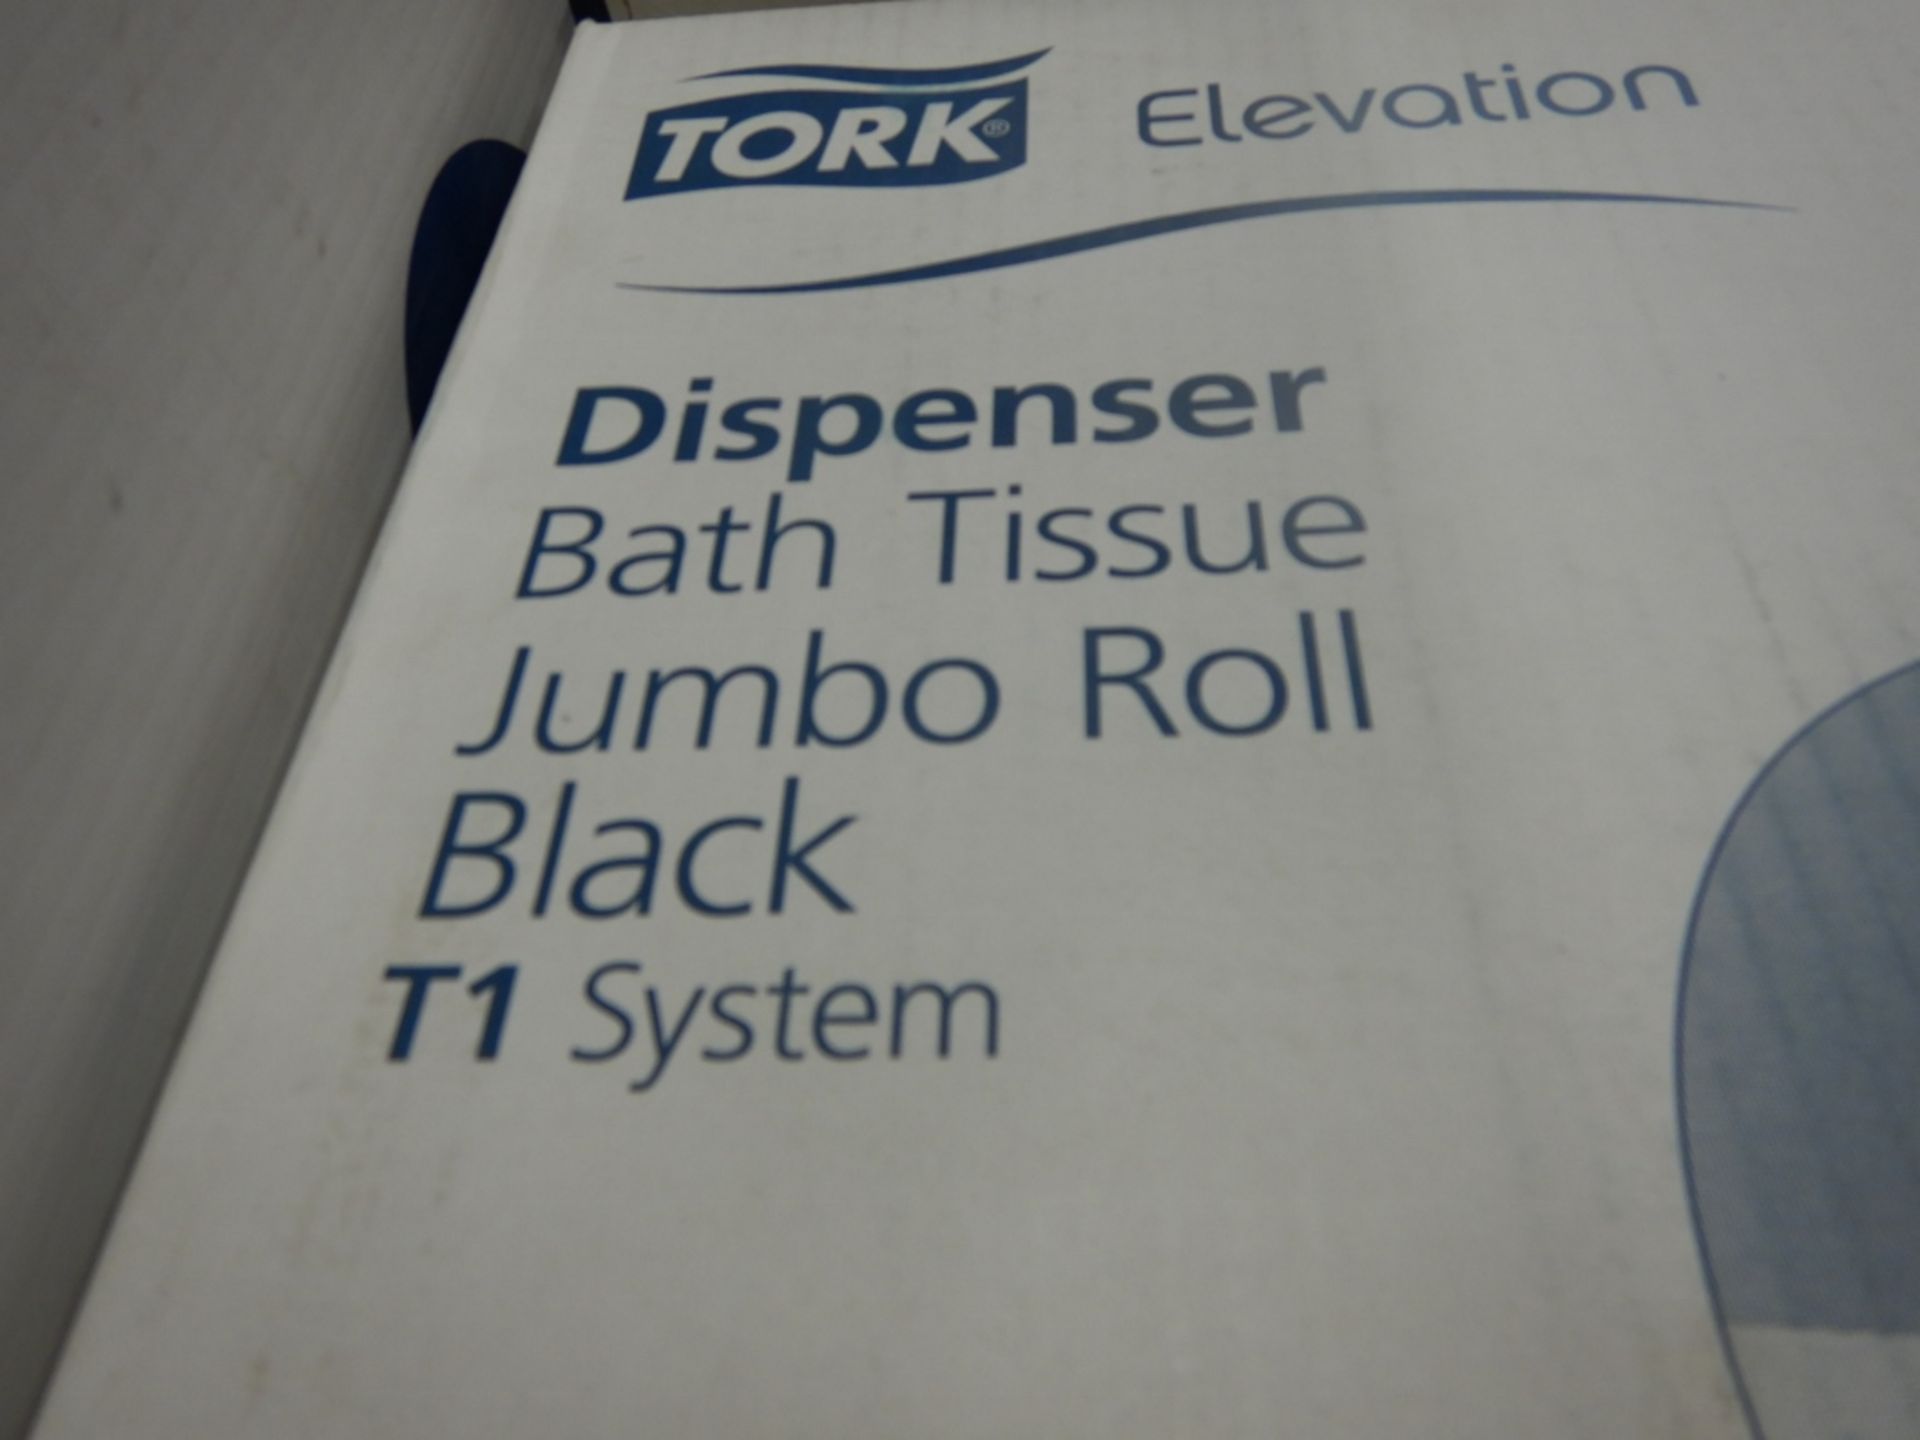 3-TORK BATH TISSUE JUMBO ROLL DISPENSER T1 SYSTEM - BLACK - Image 2 of 3